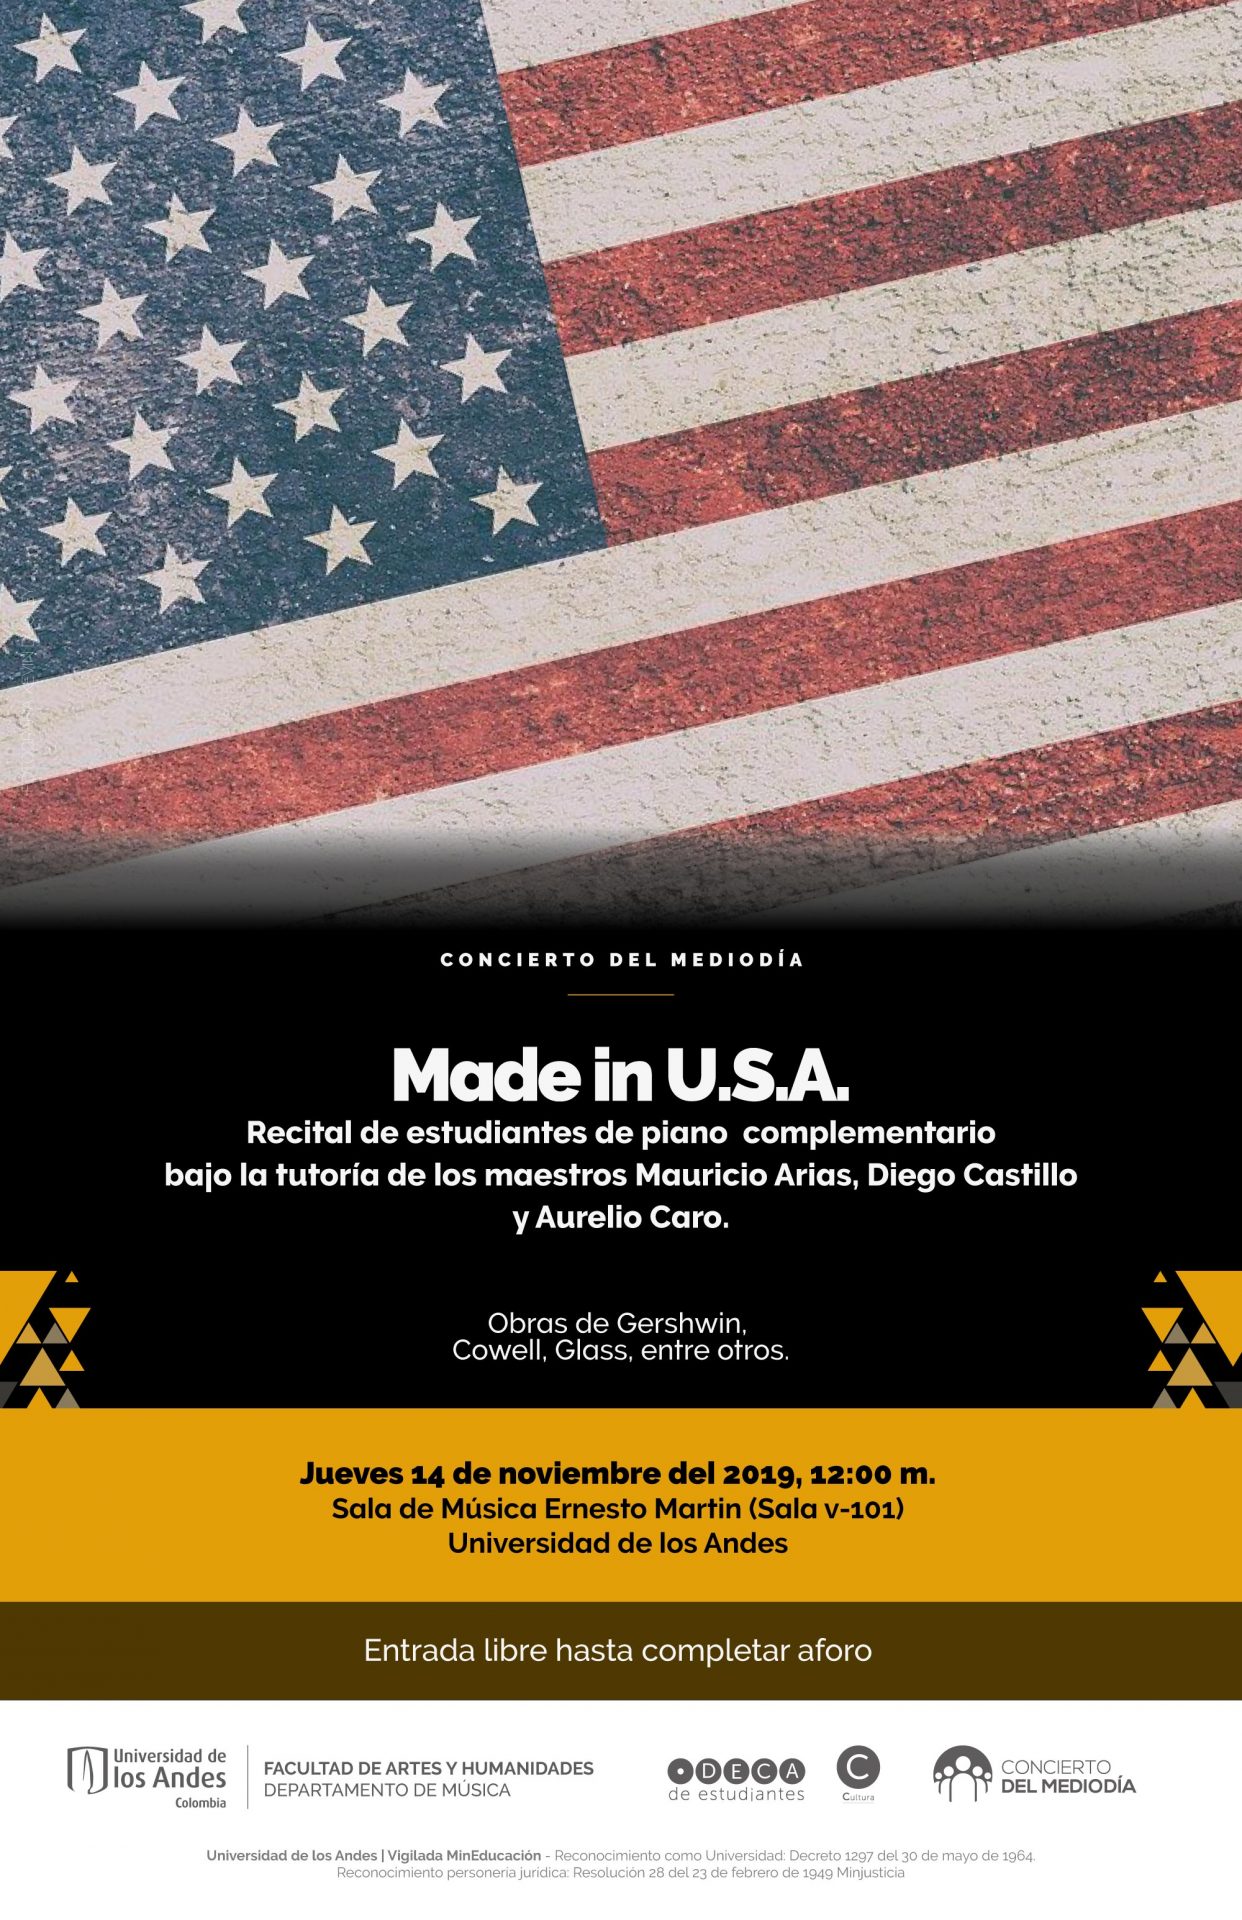 Concierto del Mediodía: Made in U.S.A. - Recital de estudiantes de piano complementario